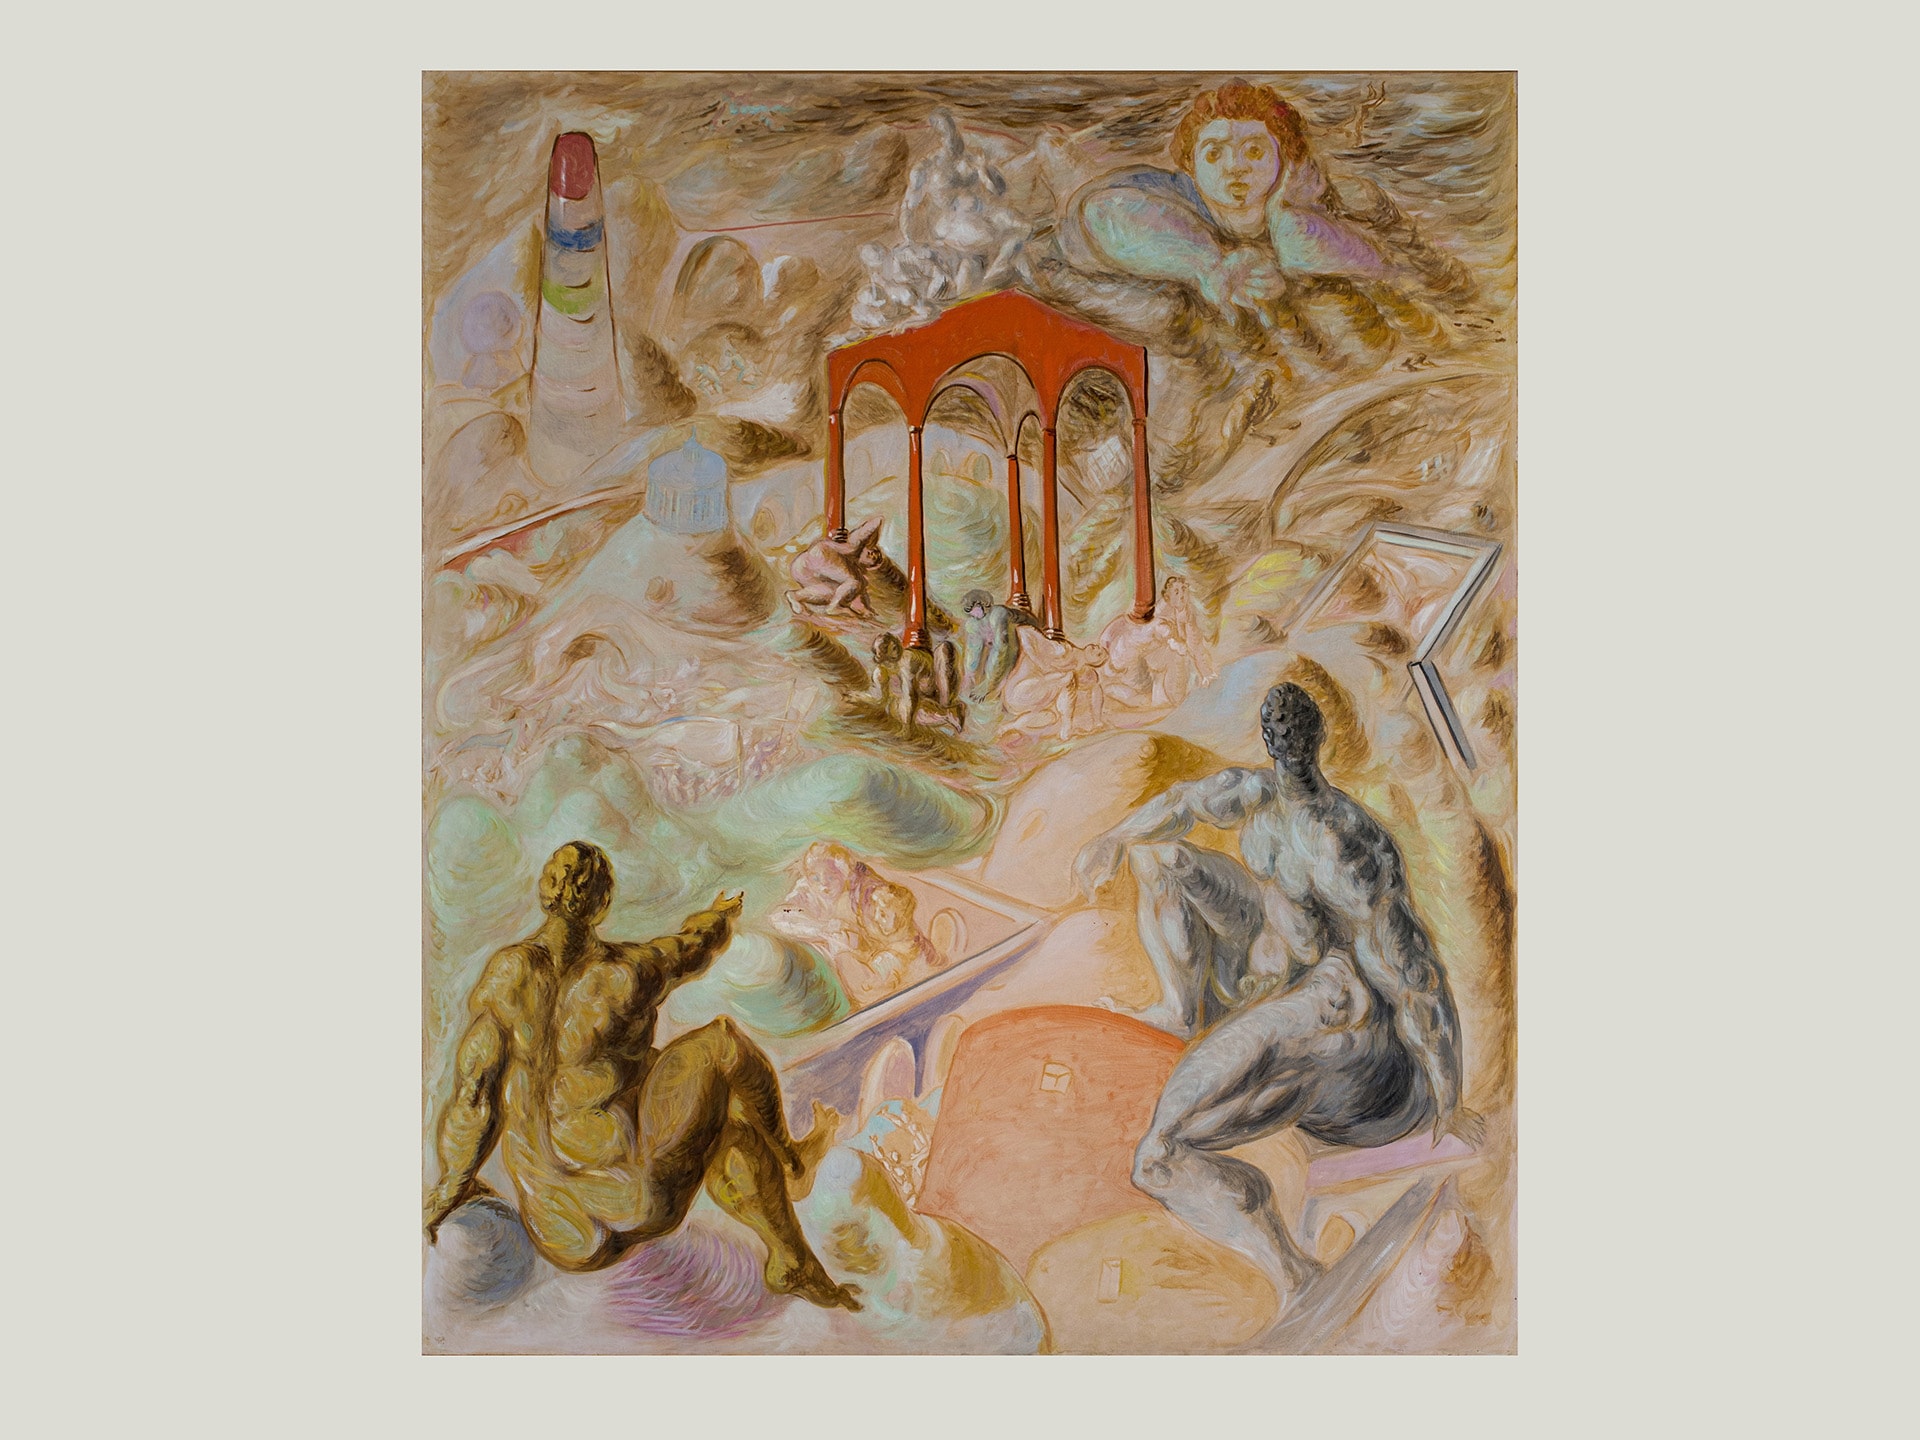 Alberto Barni, Tempio delle cariatidi viventi, 1981, olio su tela, 240 x272 cm